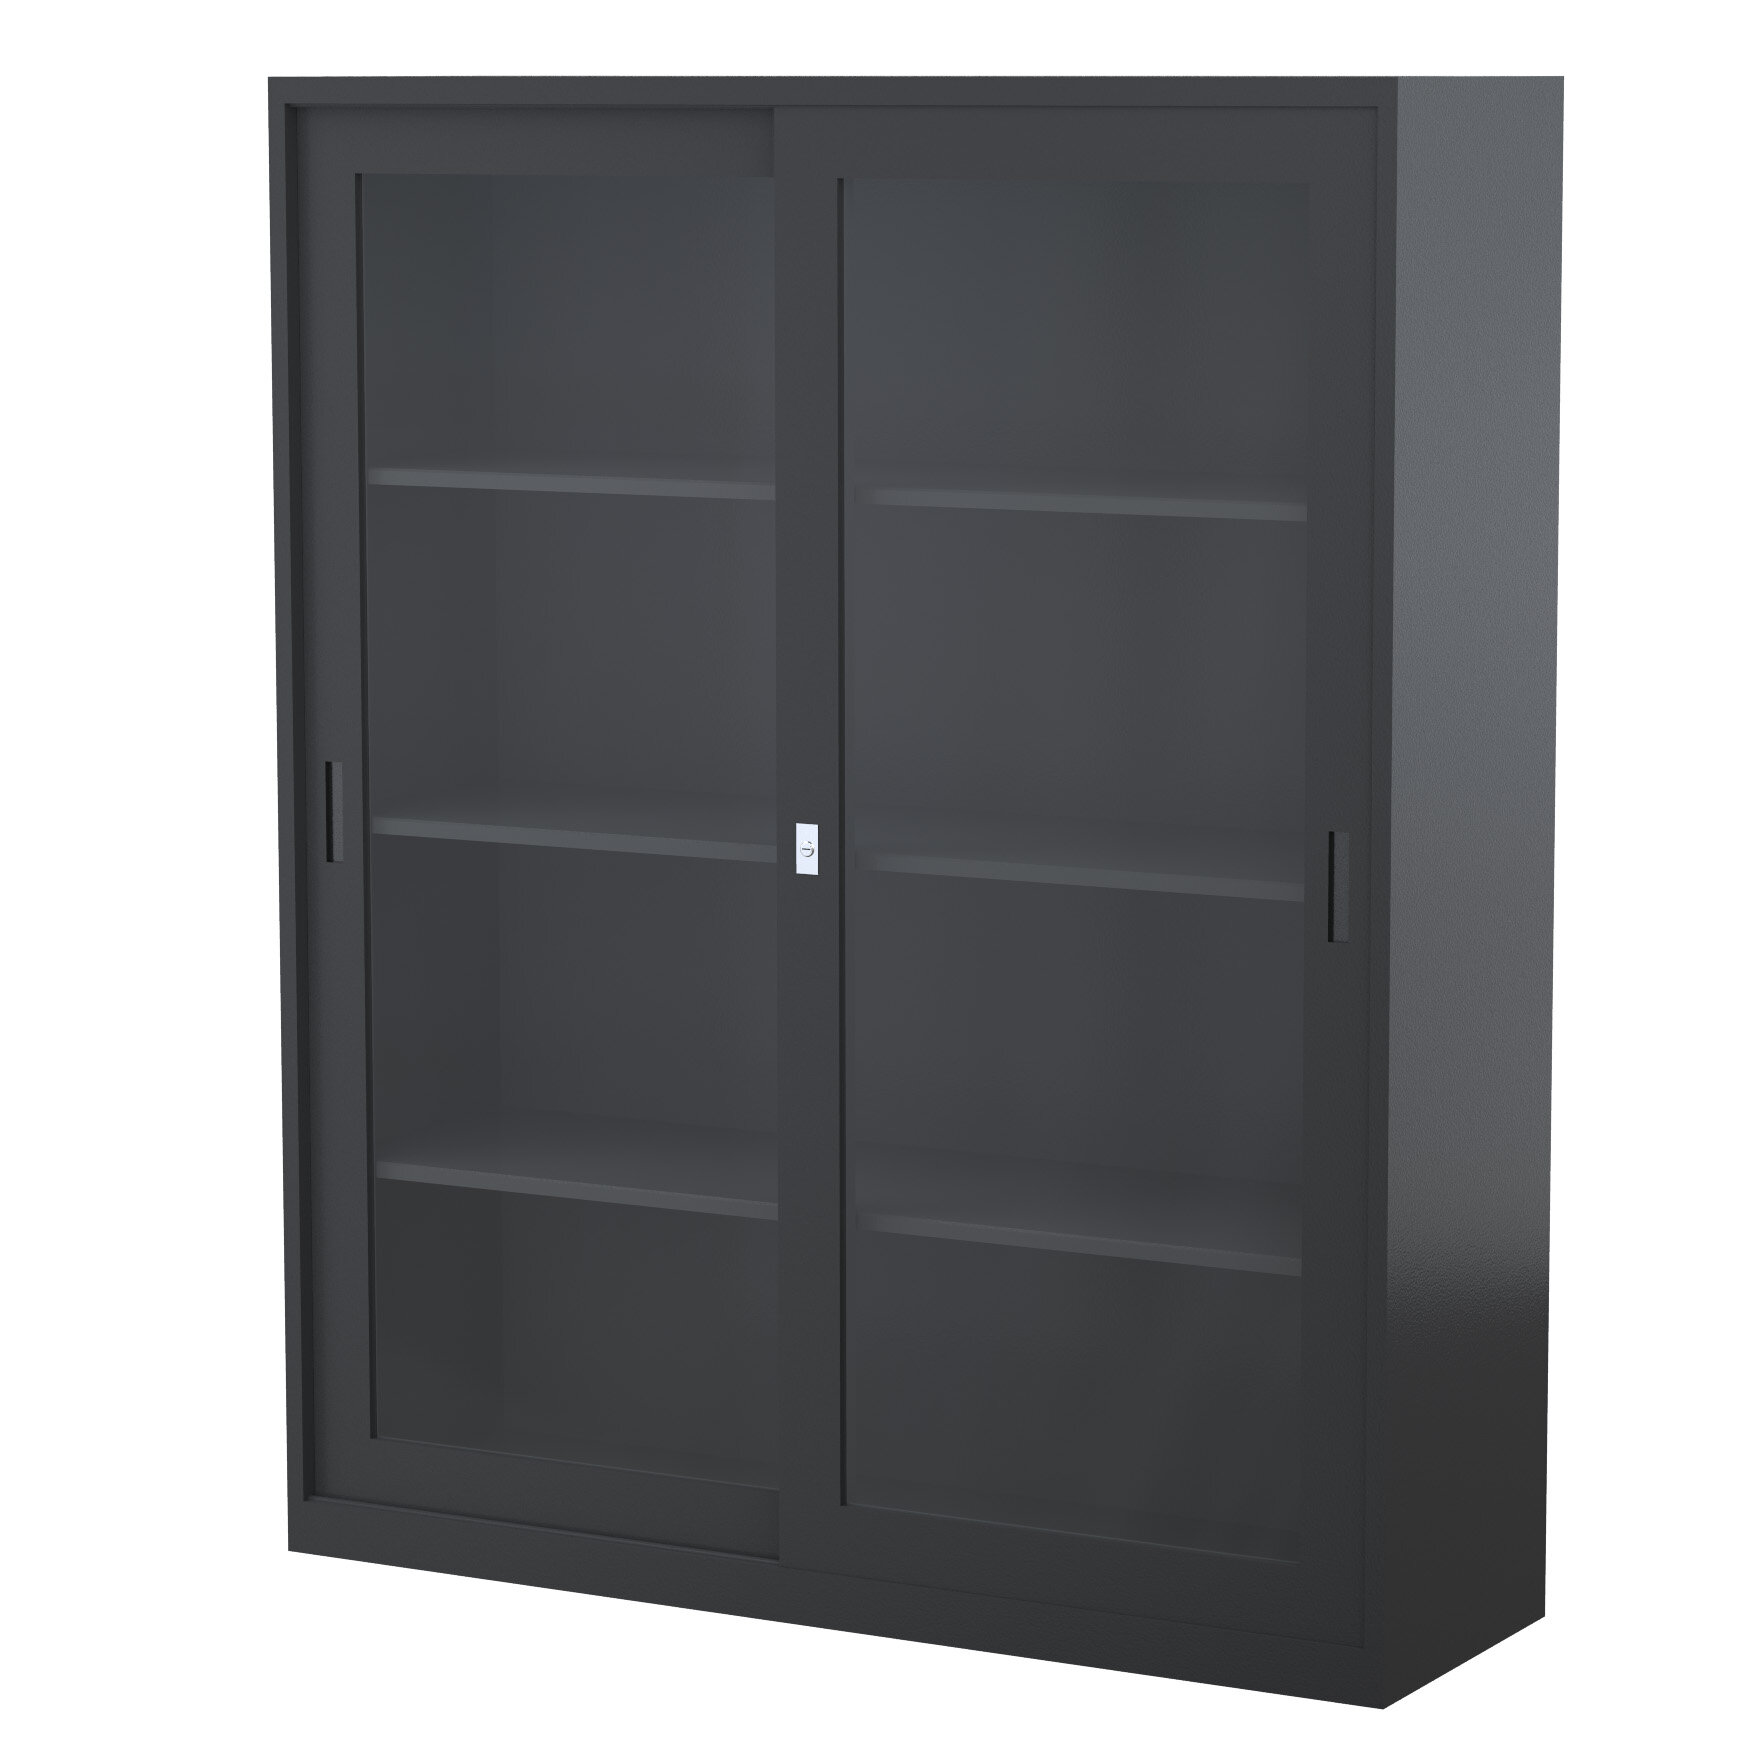 GD1830_1500 - STEELCO SG Cabinet 1830H x 1500W x 465D - 3 Shelves-GR1.jpg